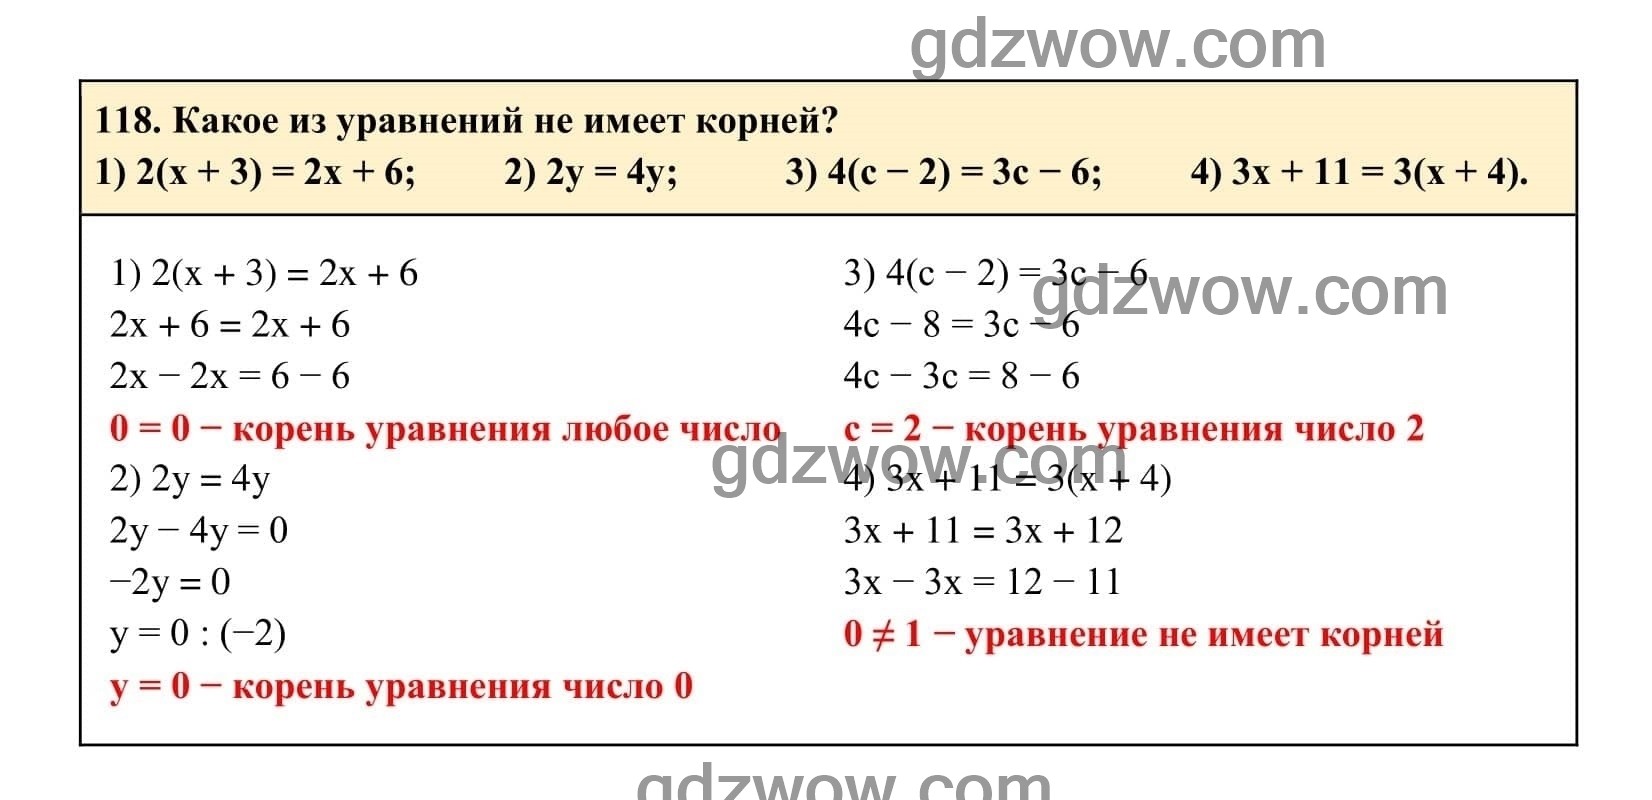 Упражнение 118 - ГДЗ по Алгебре 7 класс Учебник Макарычев (решебник) - GDZwow